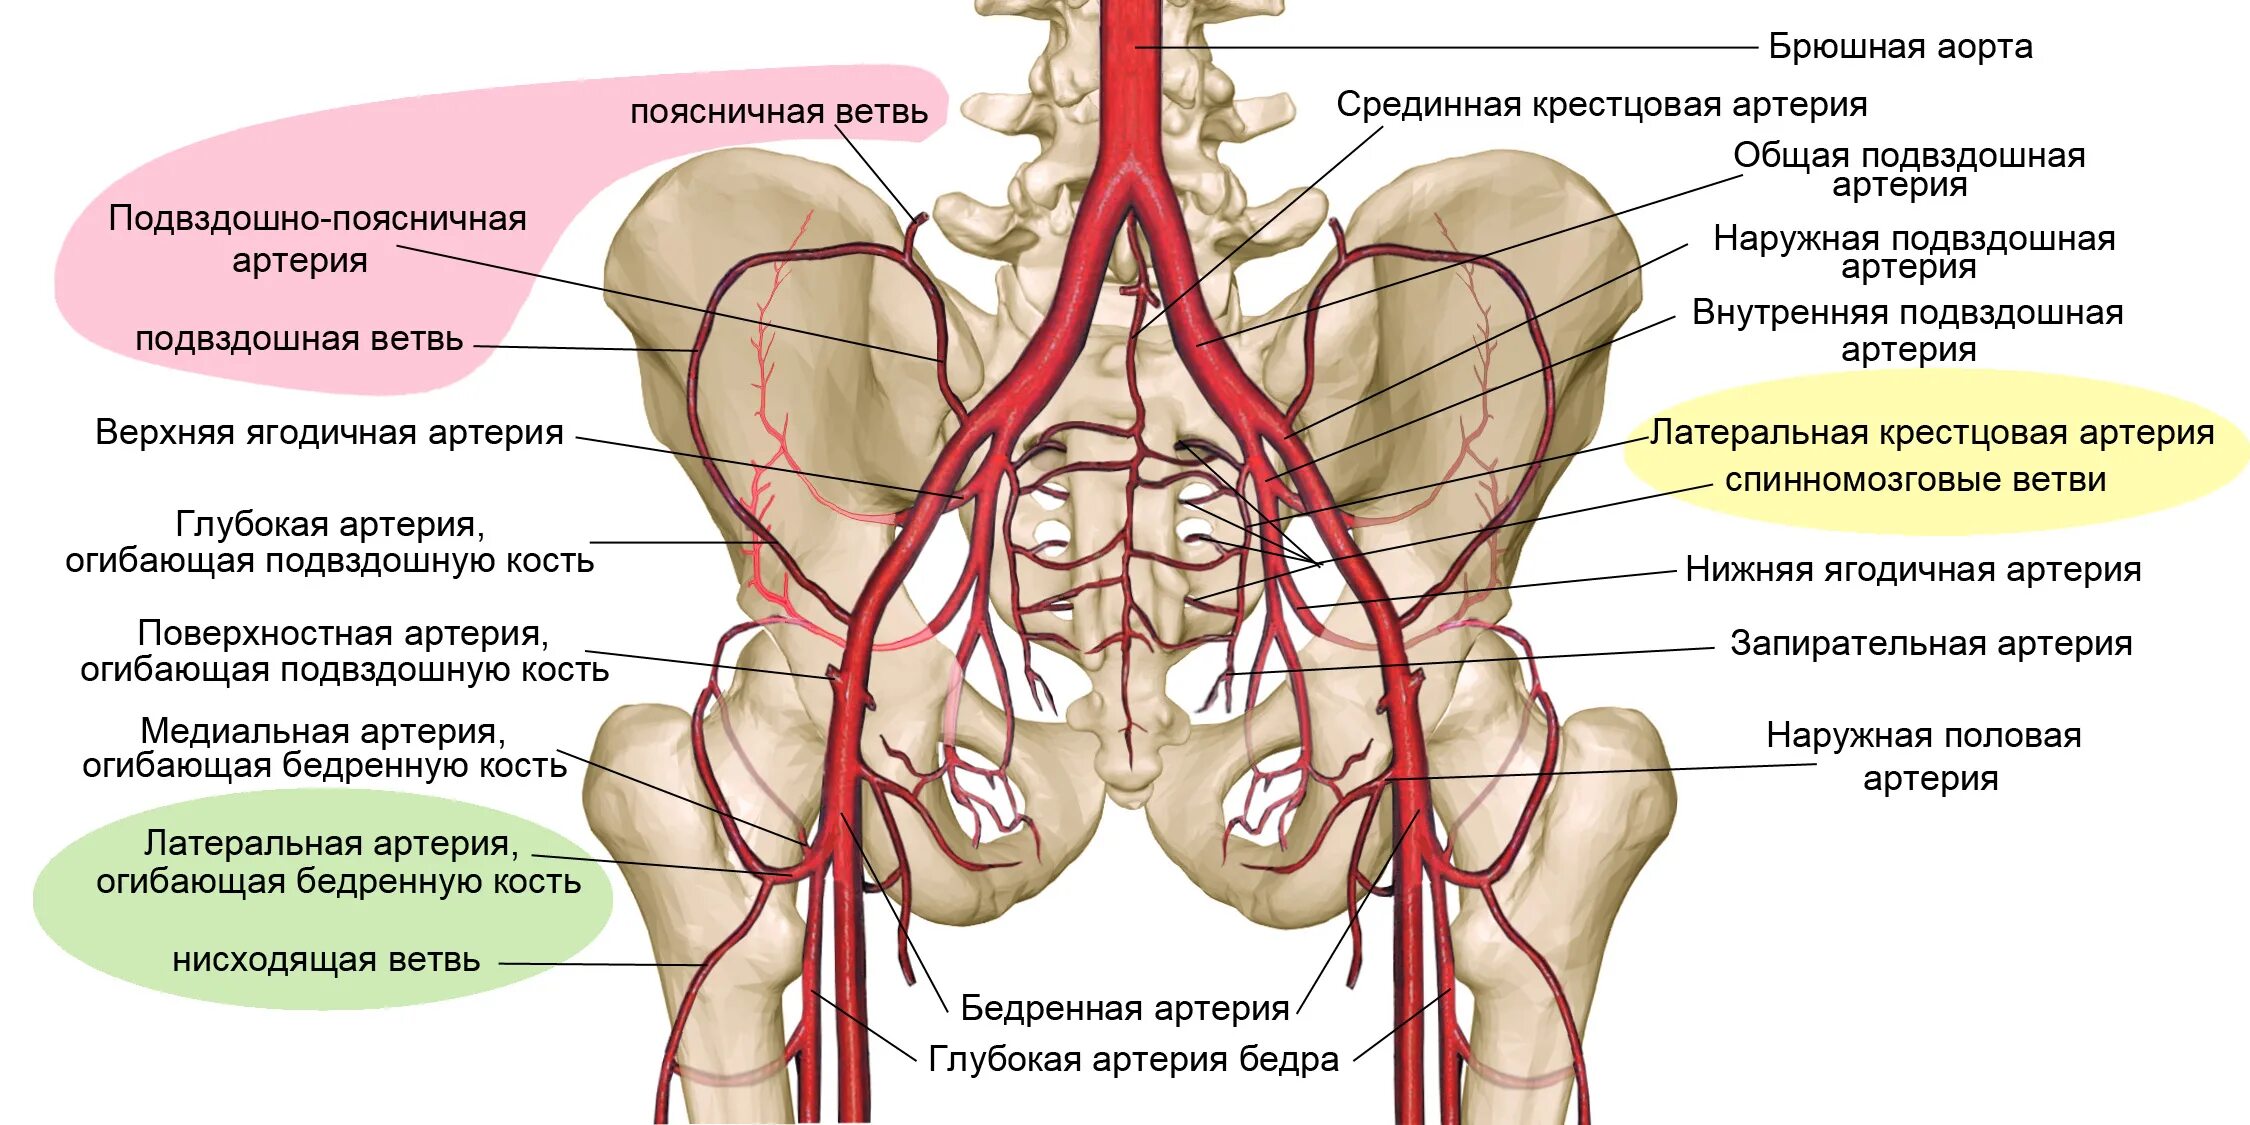 Ветви внутренней подвздошной артерии. Ветви общей подвздошной артерии схема. Ветви наружной подвздошной артерии анатомия. Ветви внутренней подвздошной артерии анатомия.